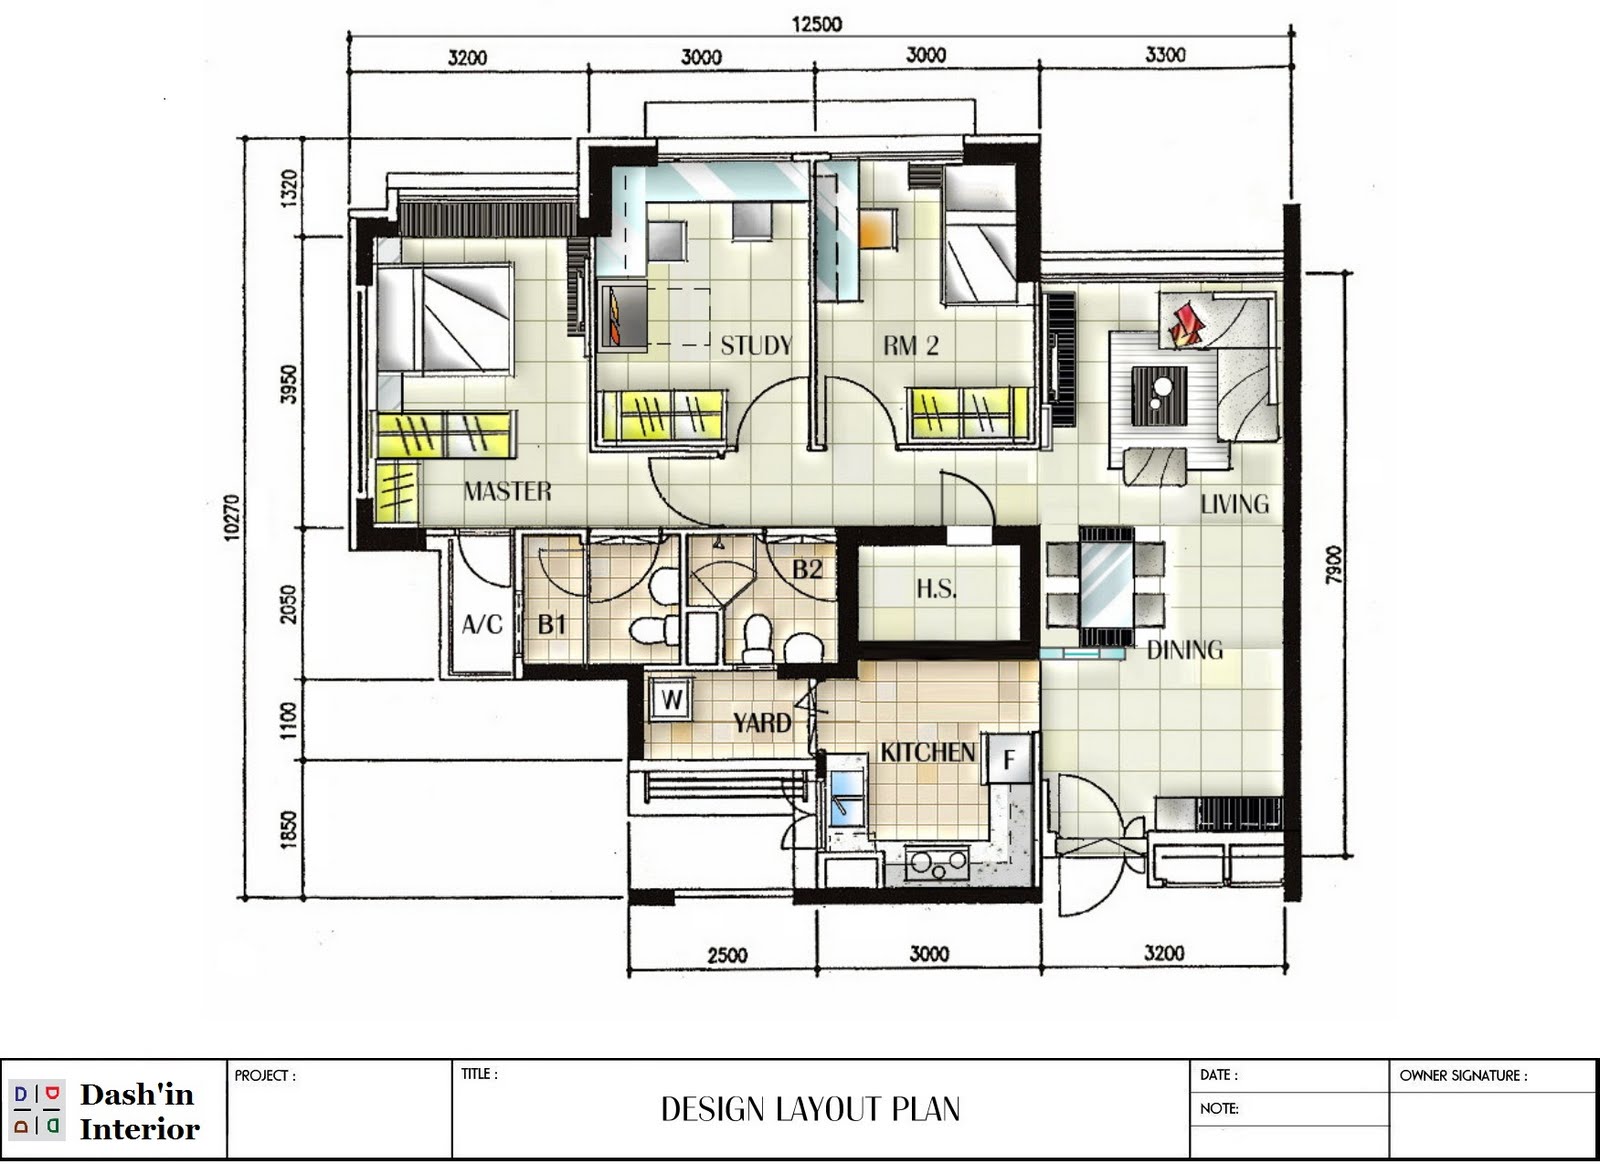 Dash'in Interior Hand Drawn Designs floor plan layout